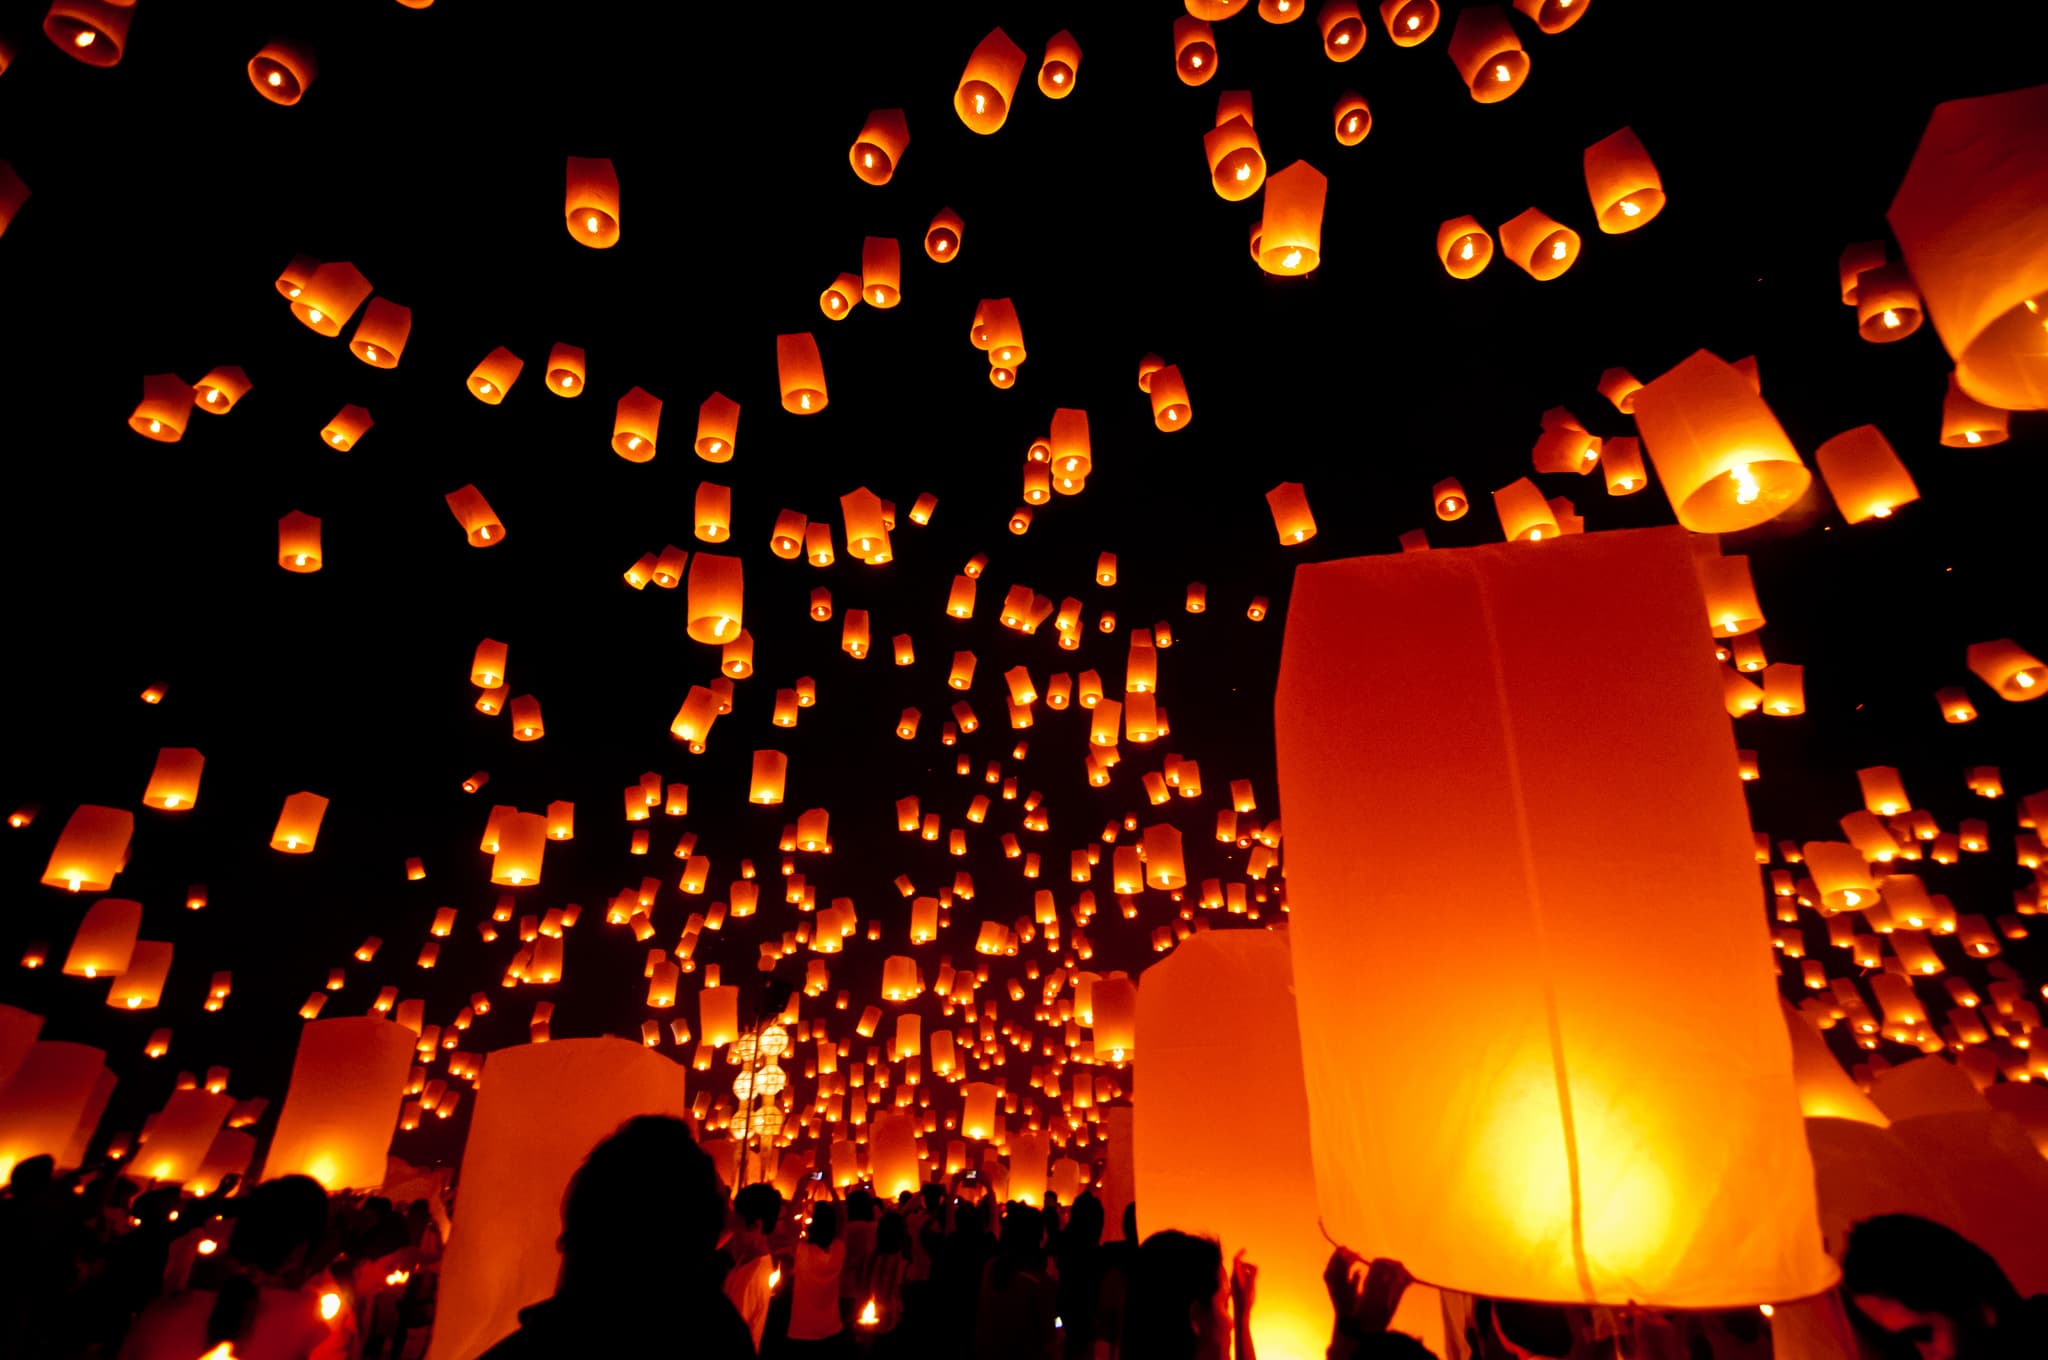 Ver de perto o festival das lanternas na Tailândia é uma experiência de vida única e inesquecível (Crédito da foto: www.flickr.com/Mark Fischer - Creative Commons License)